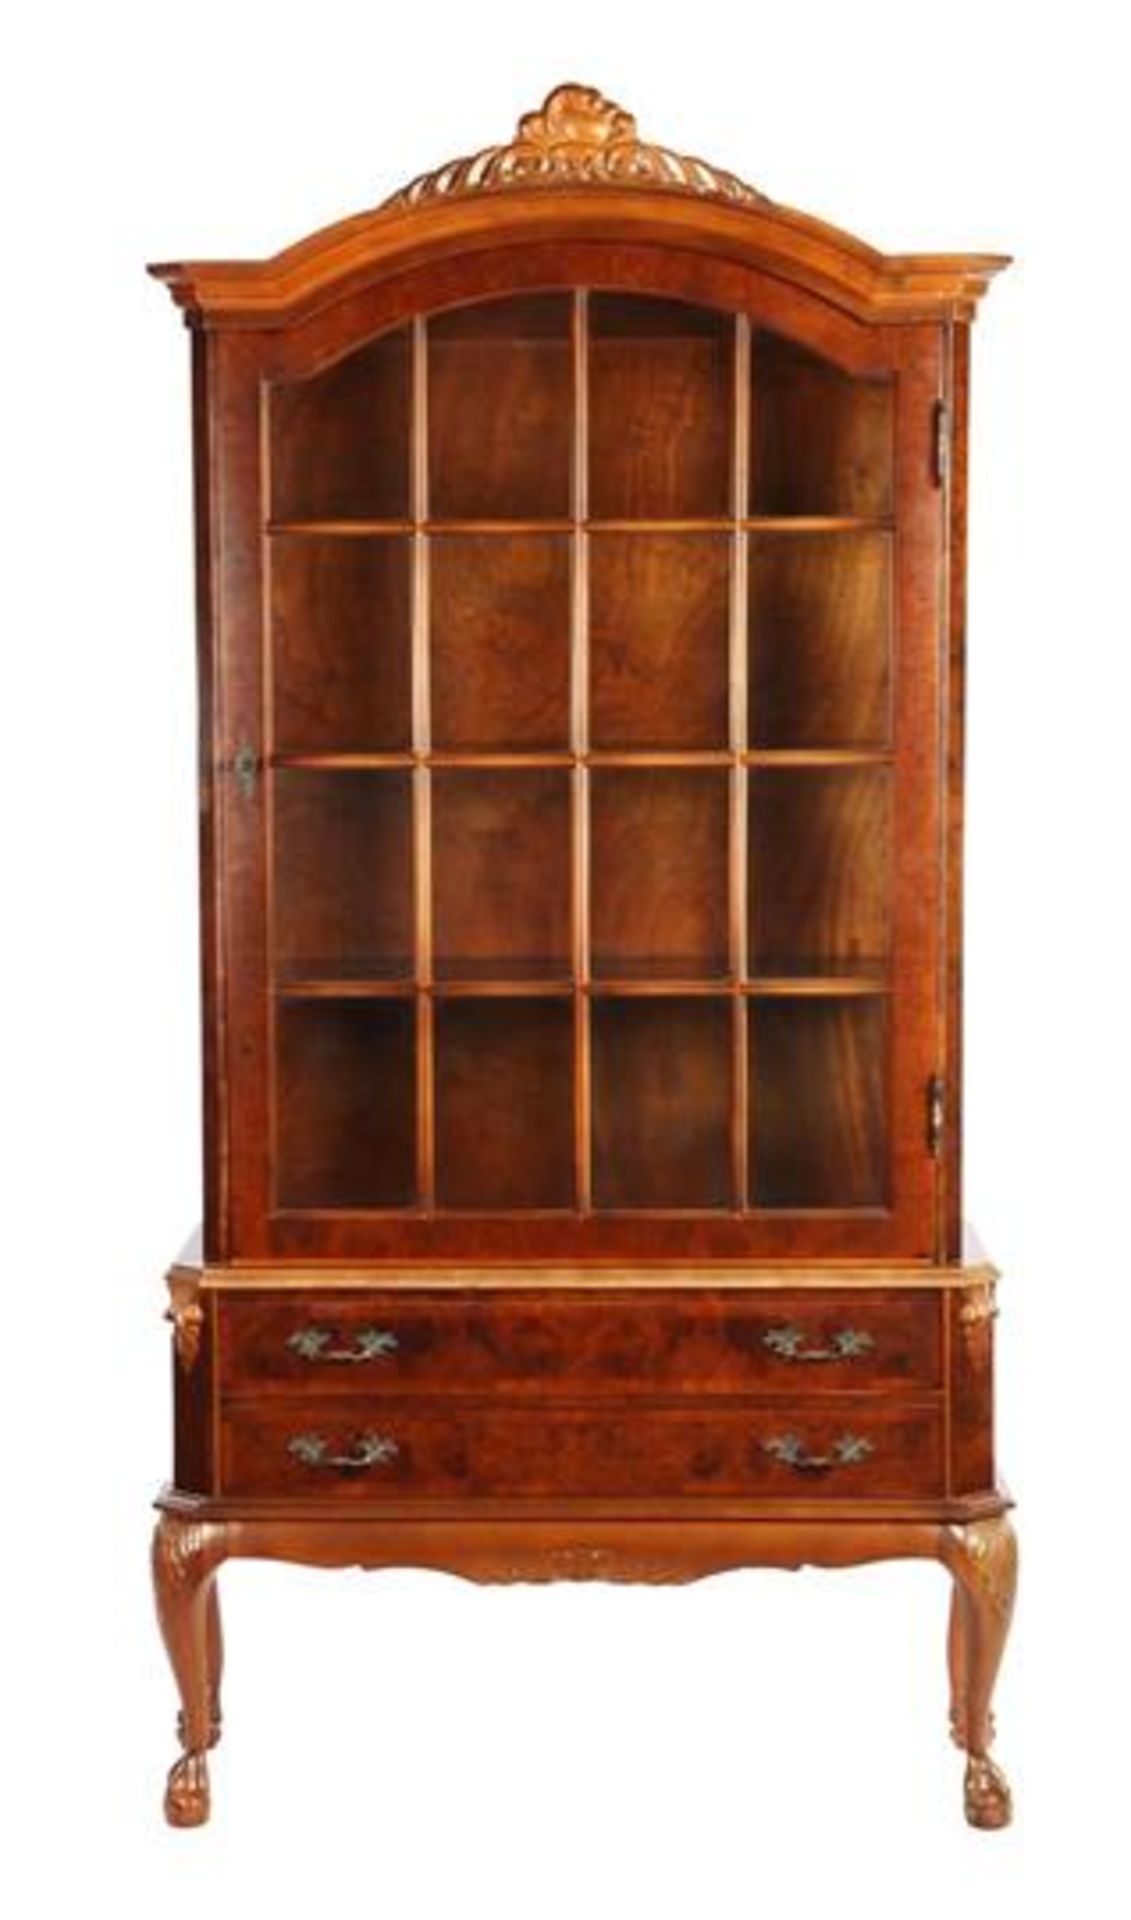 Walnut veneer 1-door display cabinet with 2 drawers 203.5 cm high, 103 cm wide, 40 cm deep